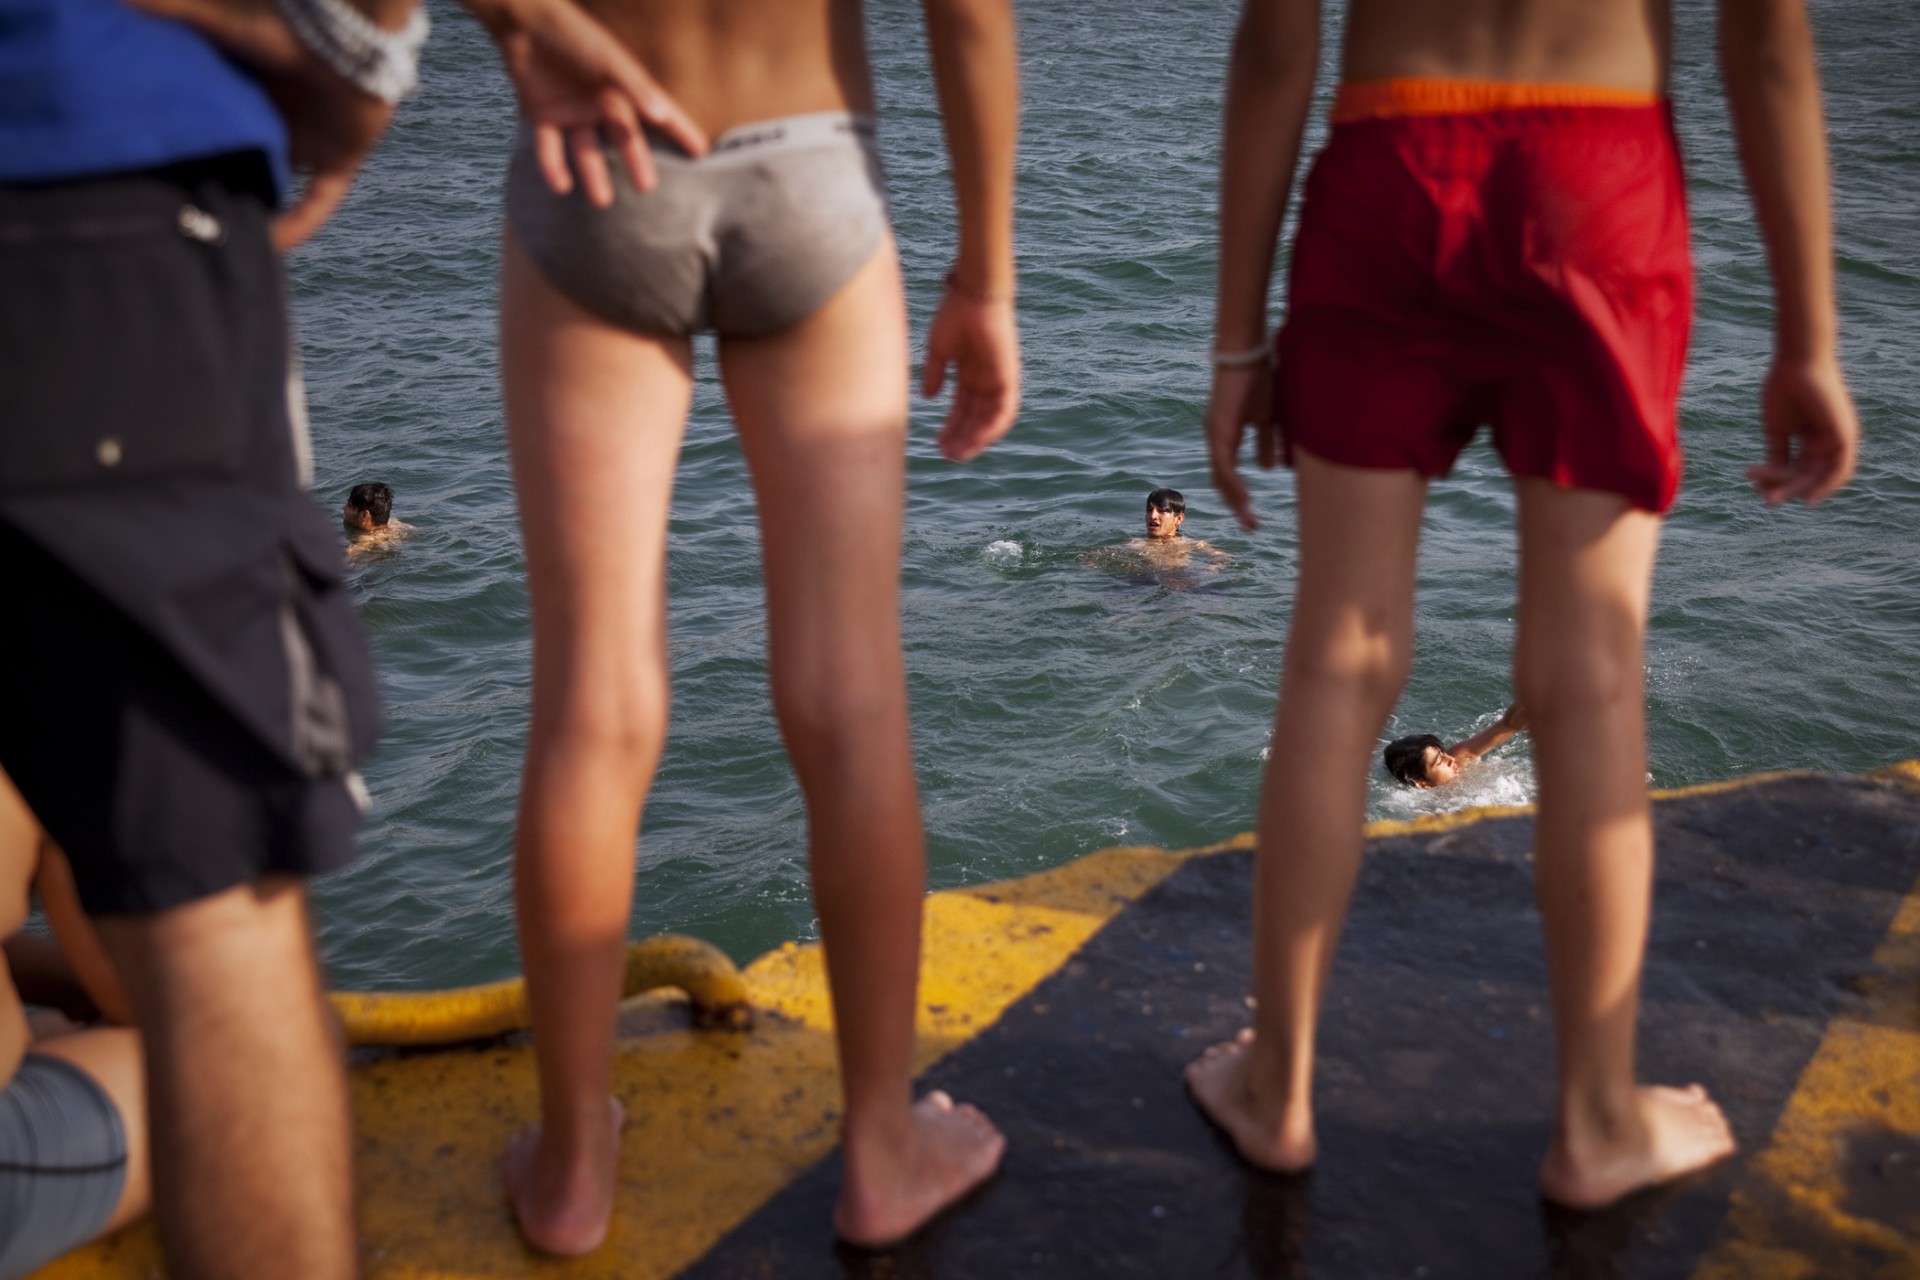 Bien que cela soit interdit, les jeunes hommes n’hésitent pas à plonger dans le port pour se rafraîchir et s’amuser.